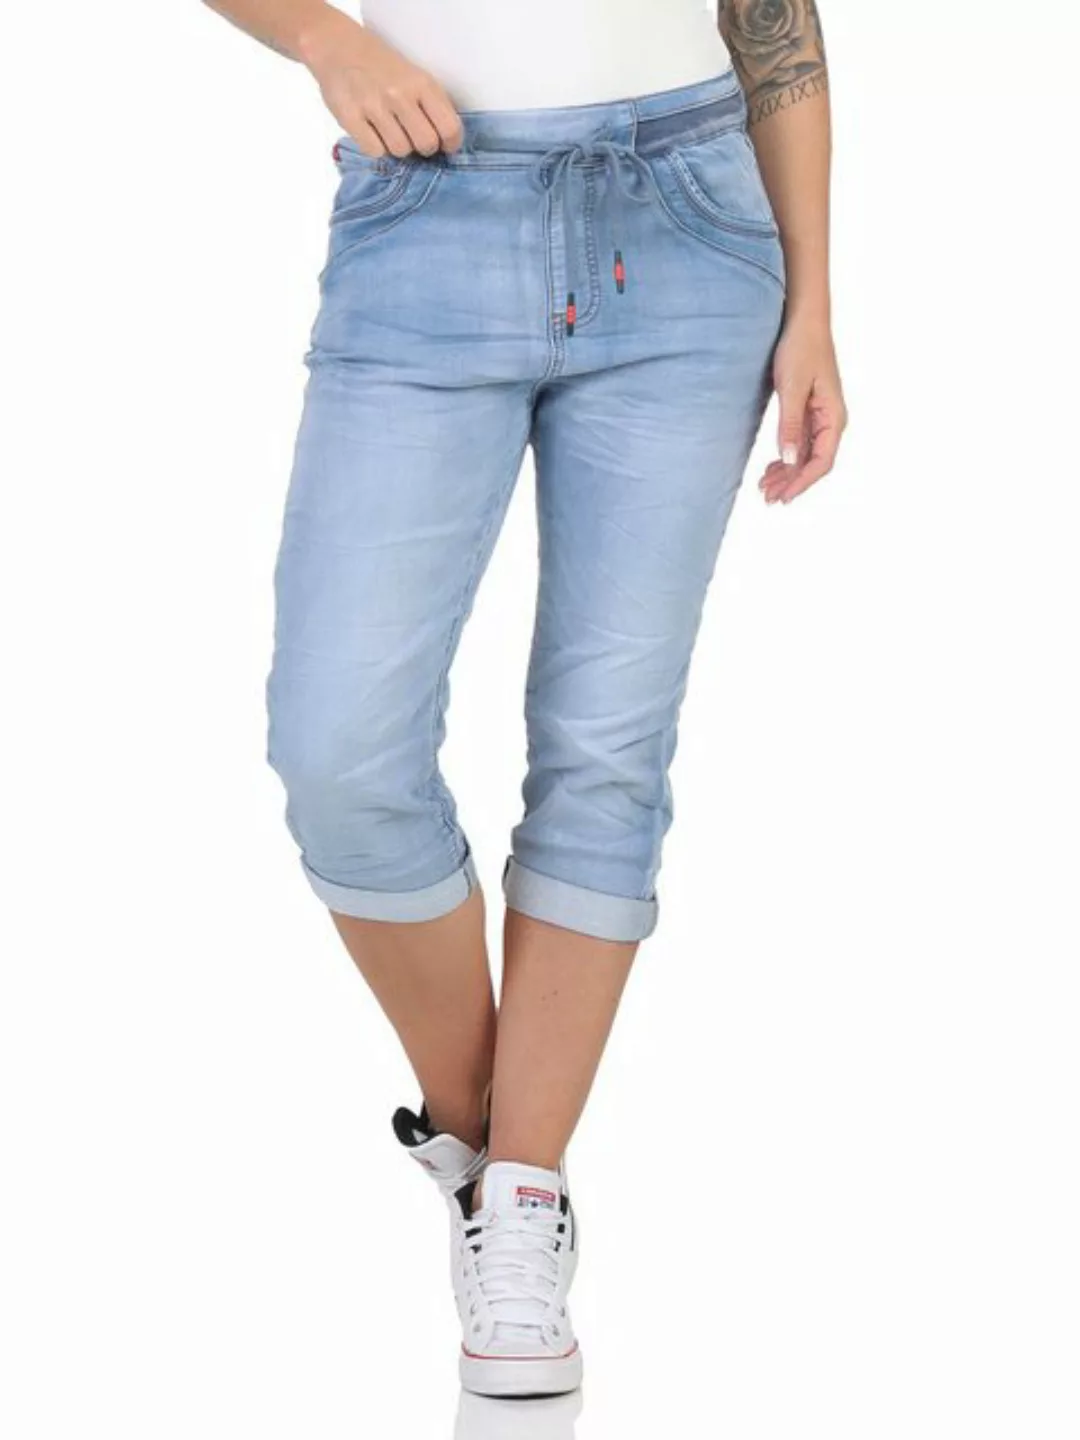 Karostar Caprijeans Karostar Damen Jeans 25102 44 Hellblau 25107 günstig online kaufen